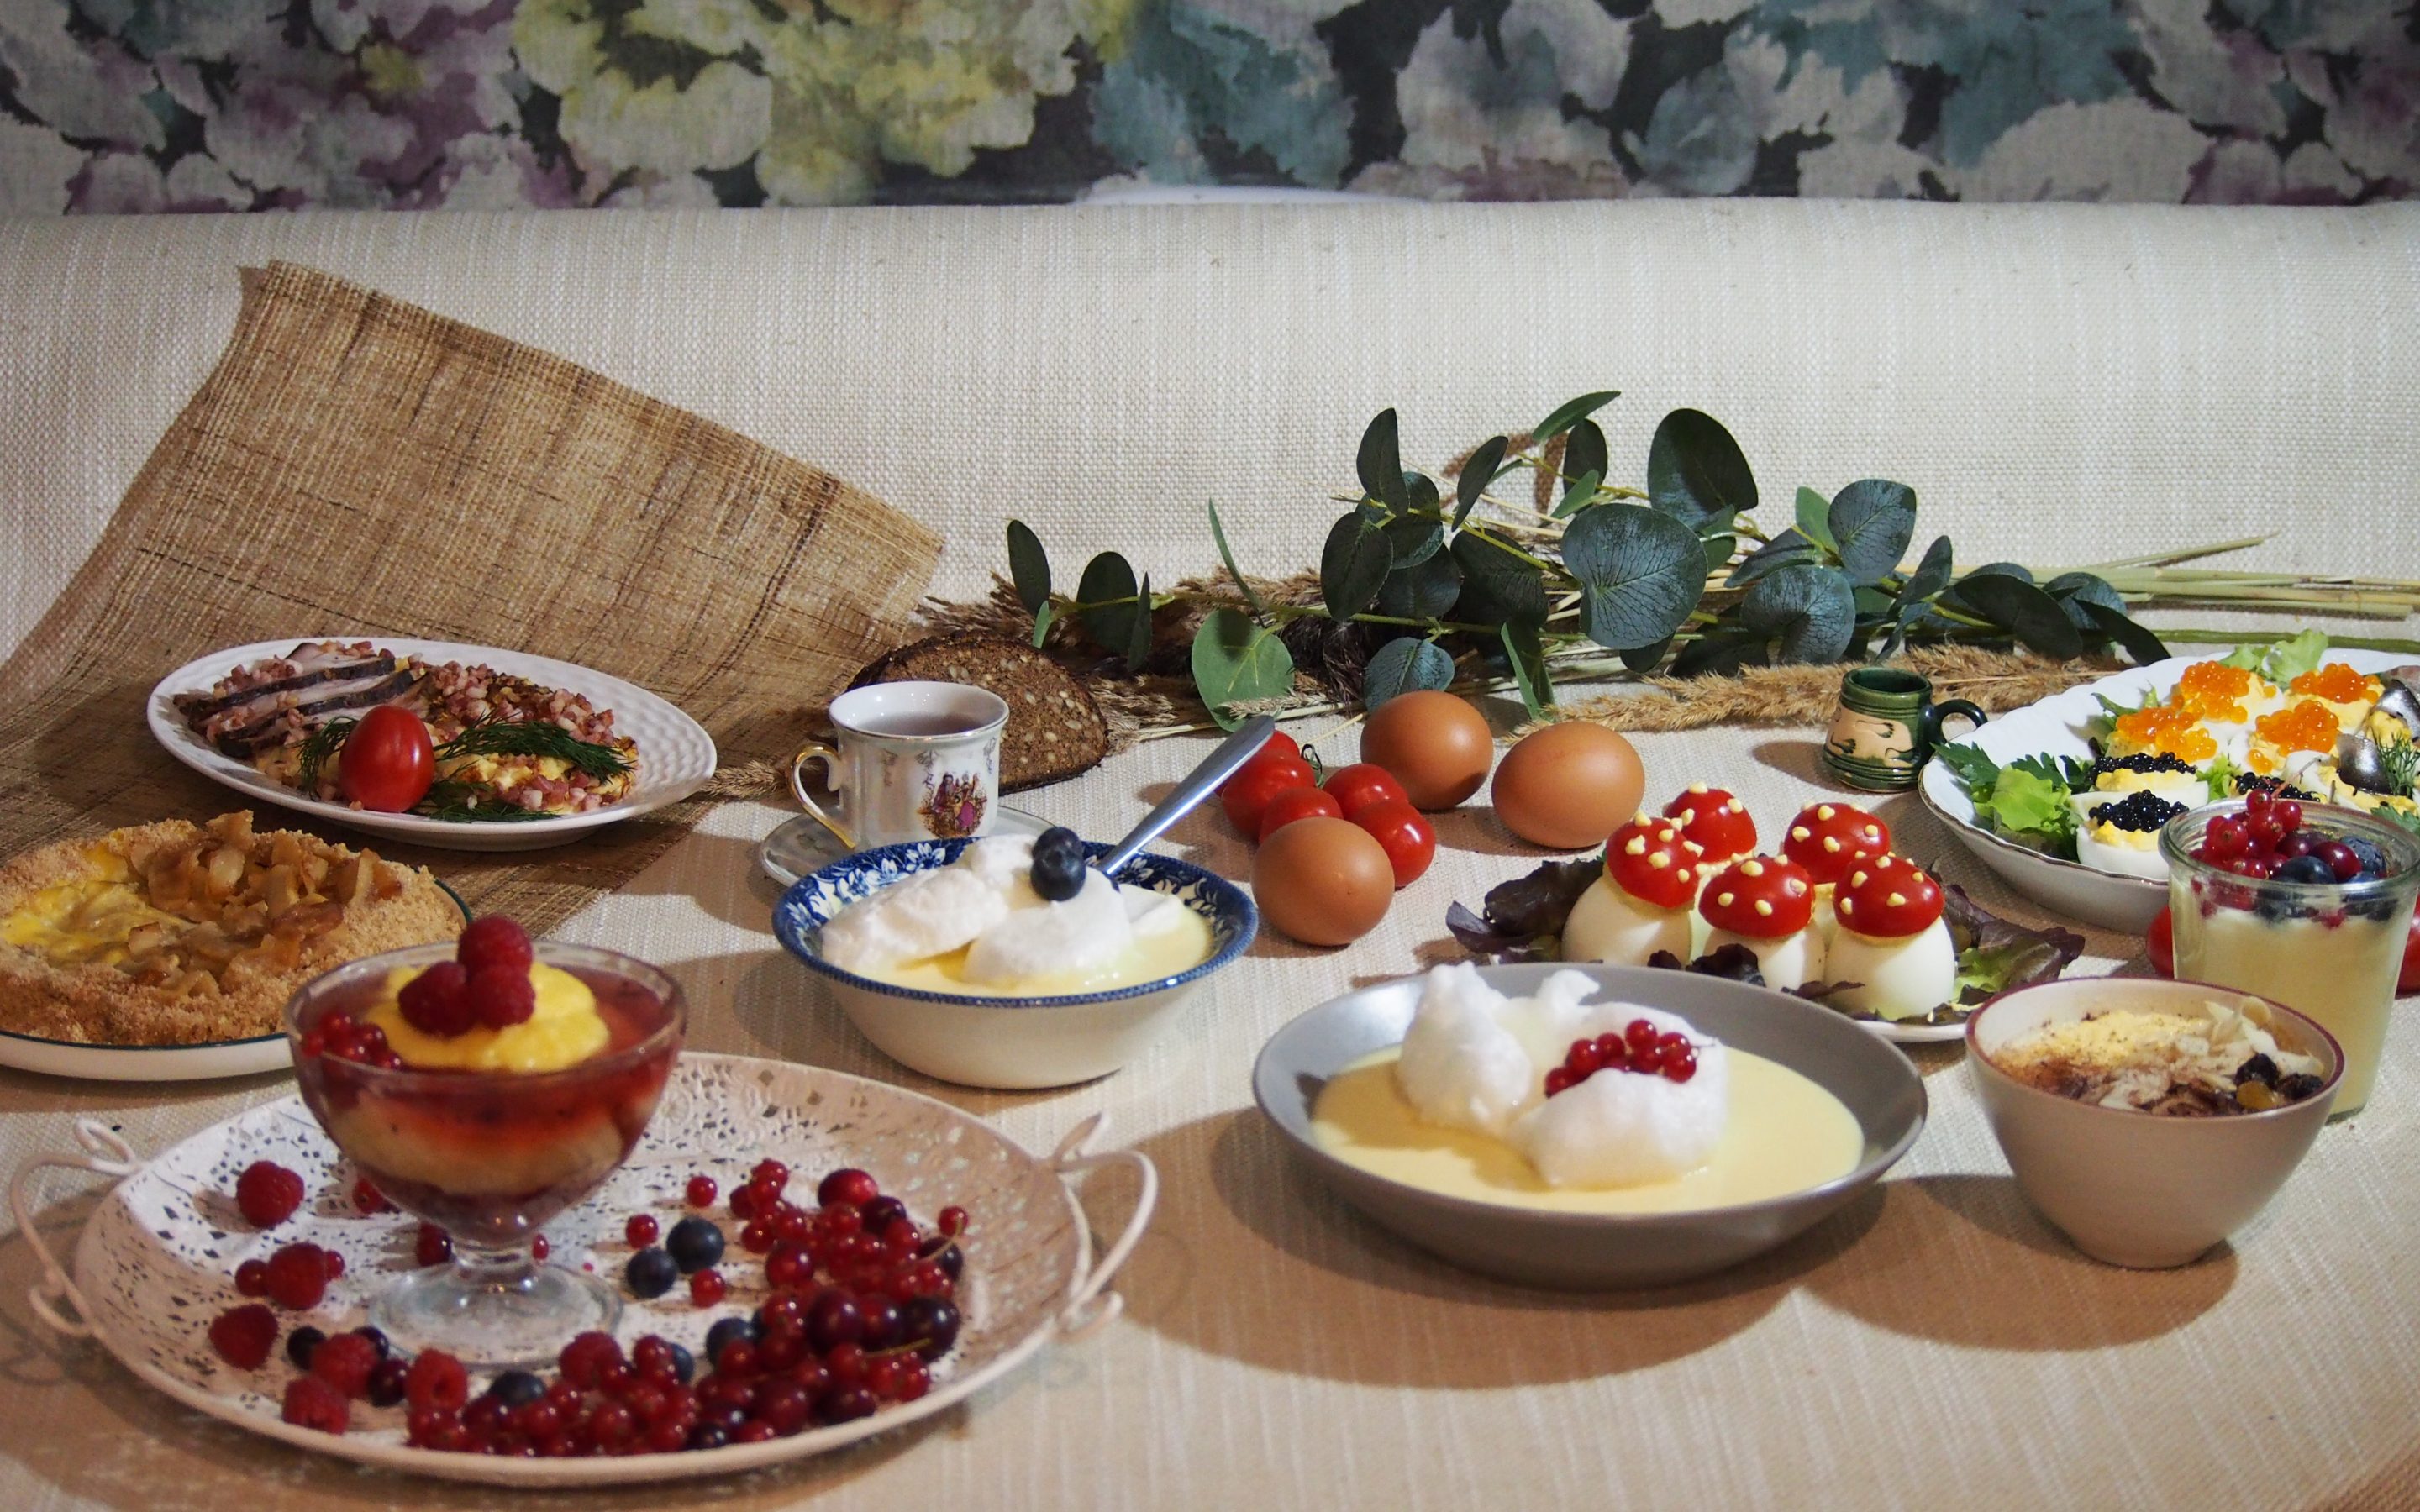 No vēstures apcirkņiem – olu ēdieni svētku galdam un ikdienai